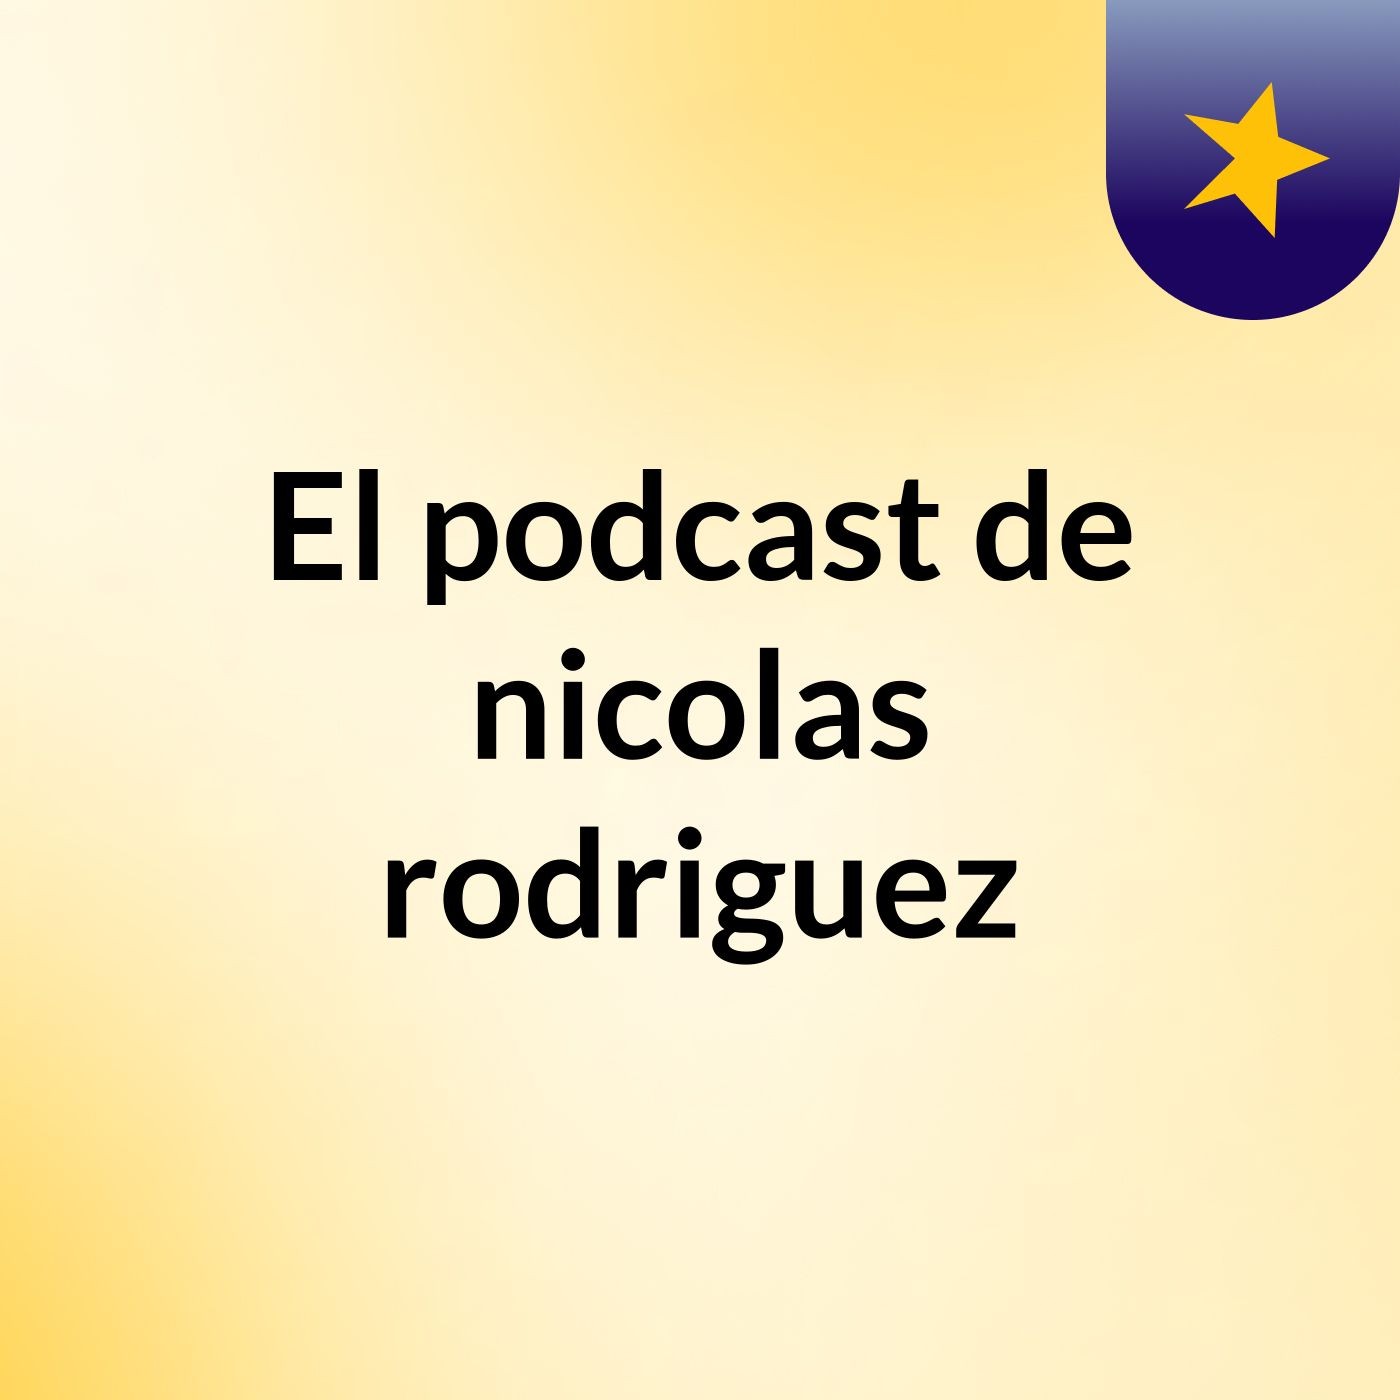 El podcast de nicolas rodriguez